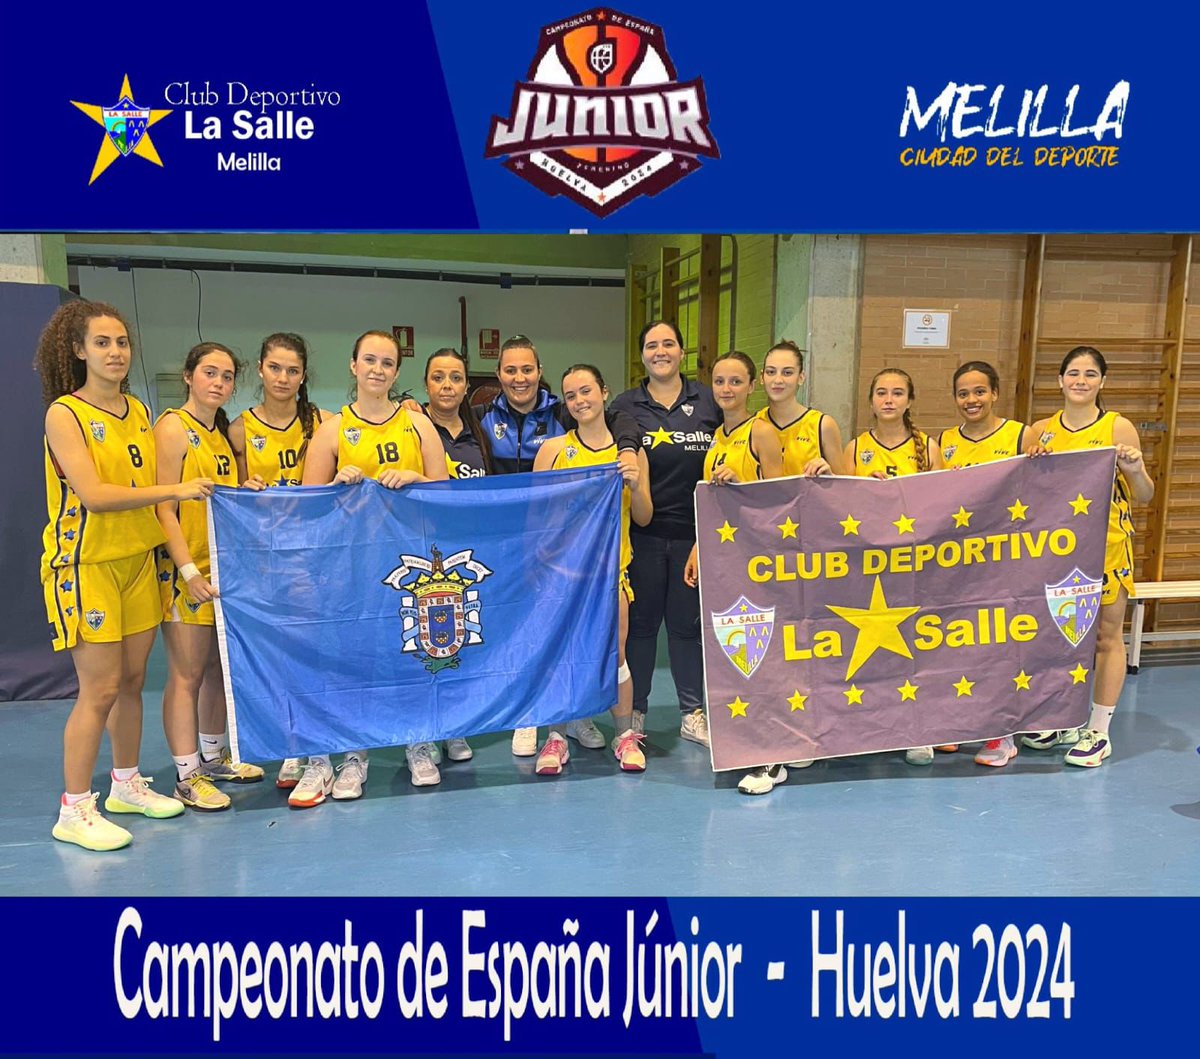 ⛹🏻‍♀️Nuestras Júniors concluyen su participación en el Cto de Clubes de España, con la mochila llena de aprendizaje y experiencias. ¡Enhorabuena por el trabajo y el esfuerzo chicas, a seguir trabajando! 💙💛